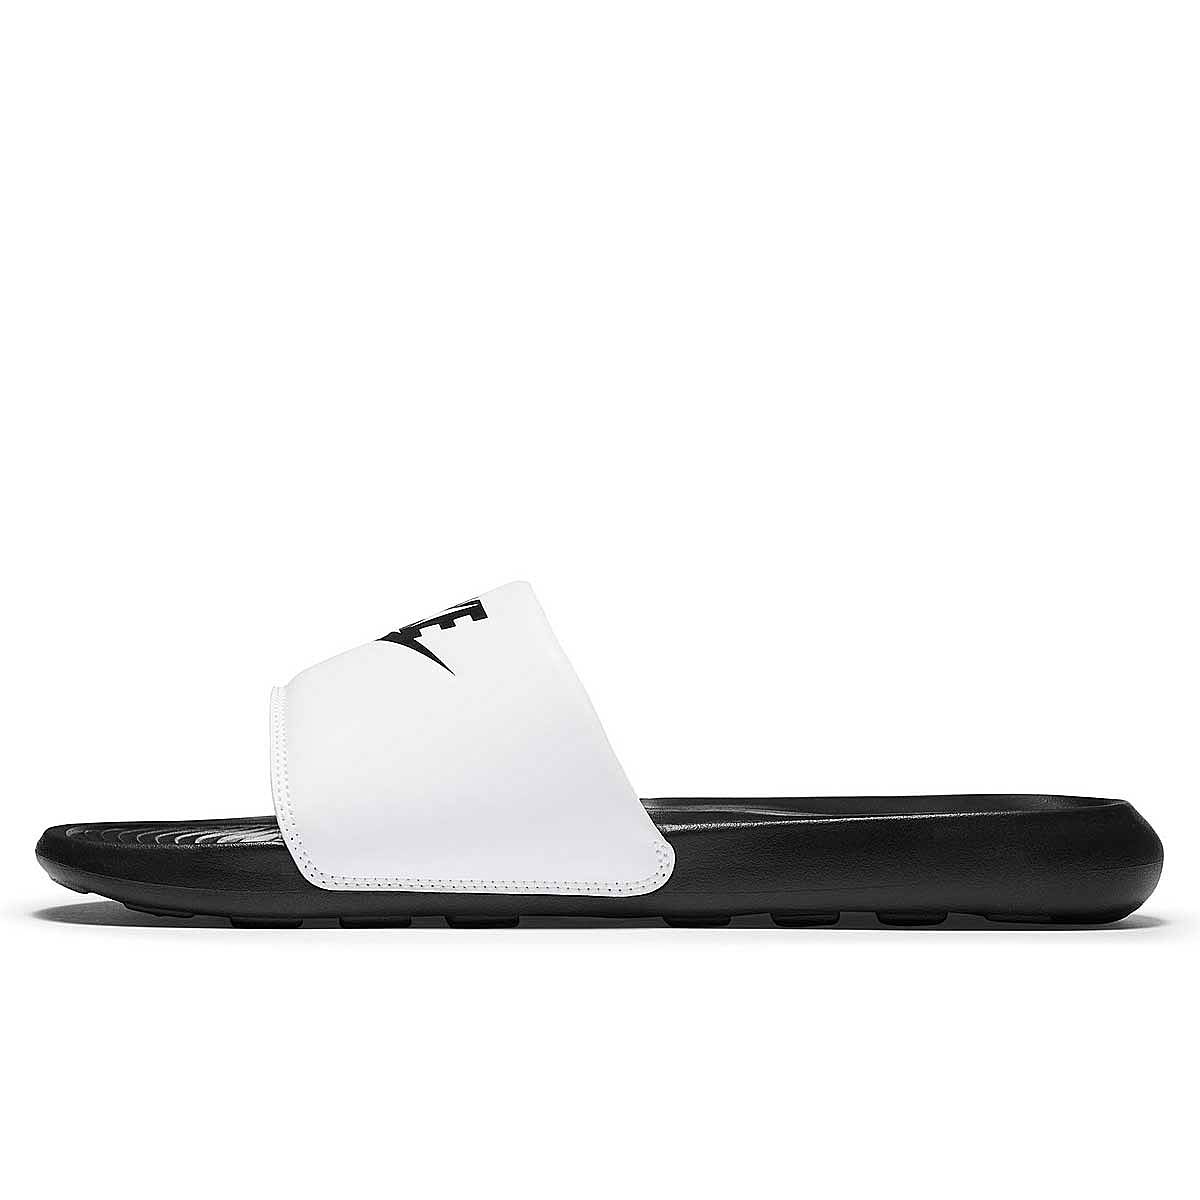 Nike Victori One Slide, Schwarz/schwarz-weiß EU42 1/2